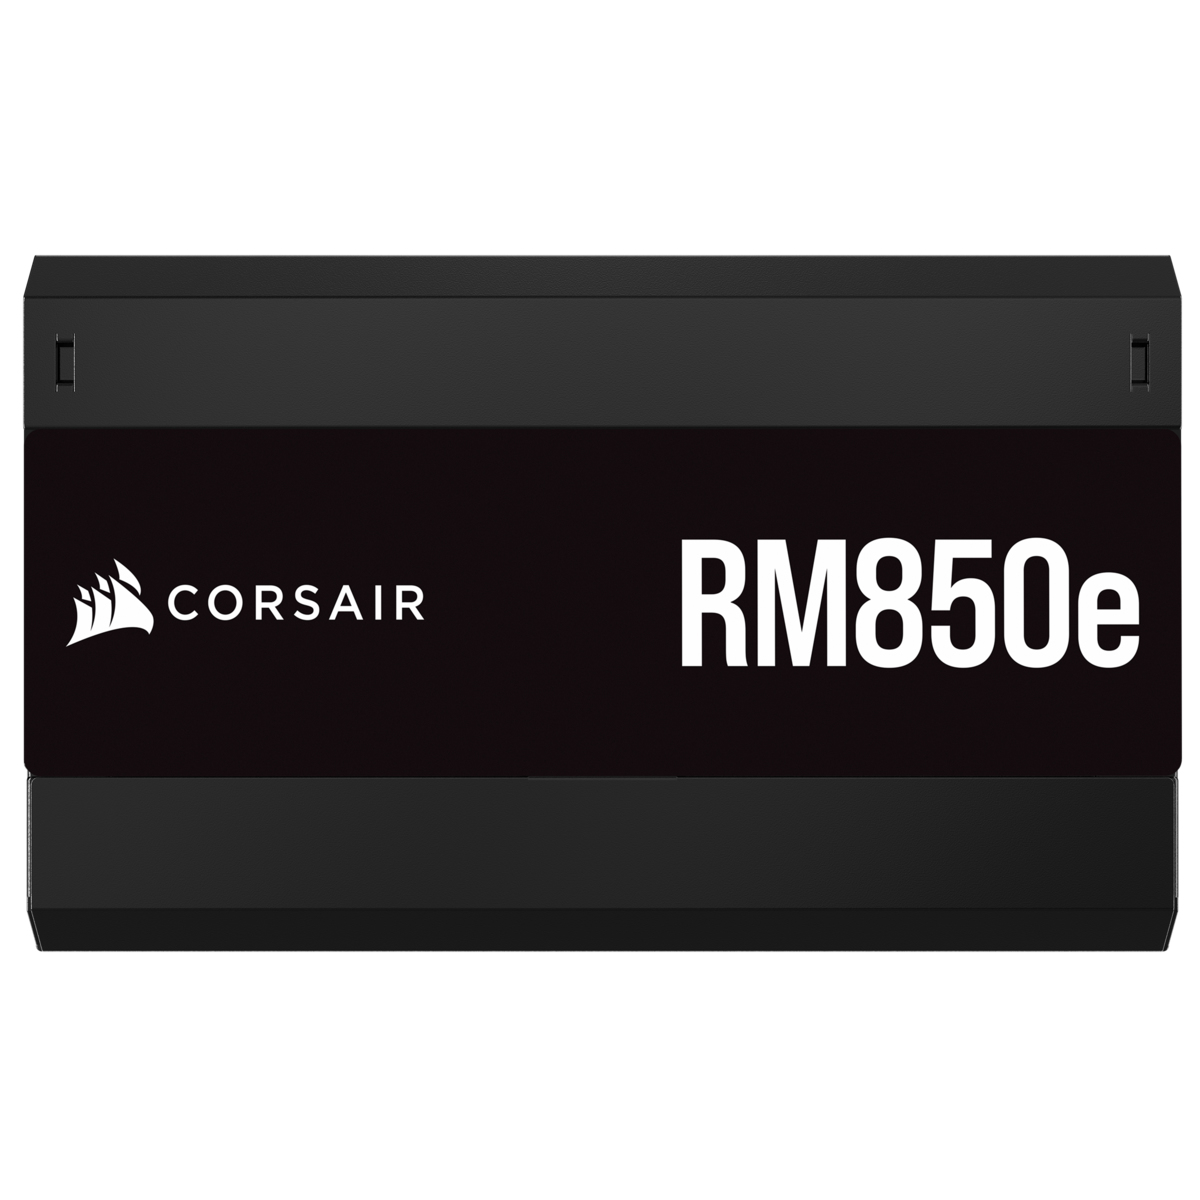 Corsair - Fonte Modular Corsair RMx Series RM850e 850W 80 Plus Gold ATX3.0